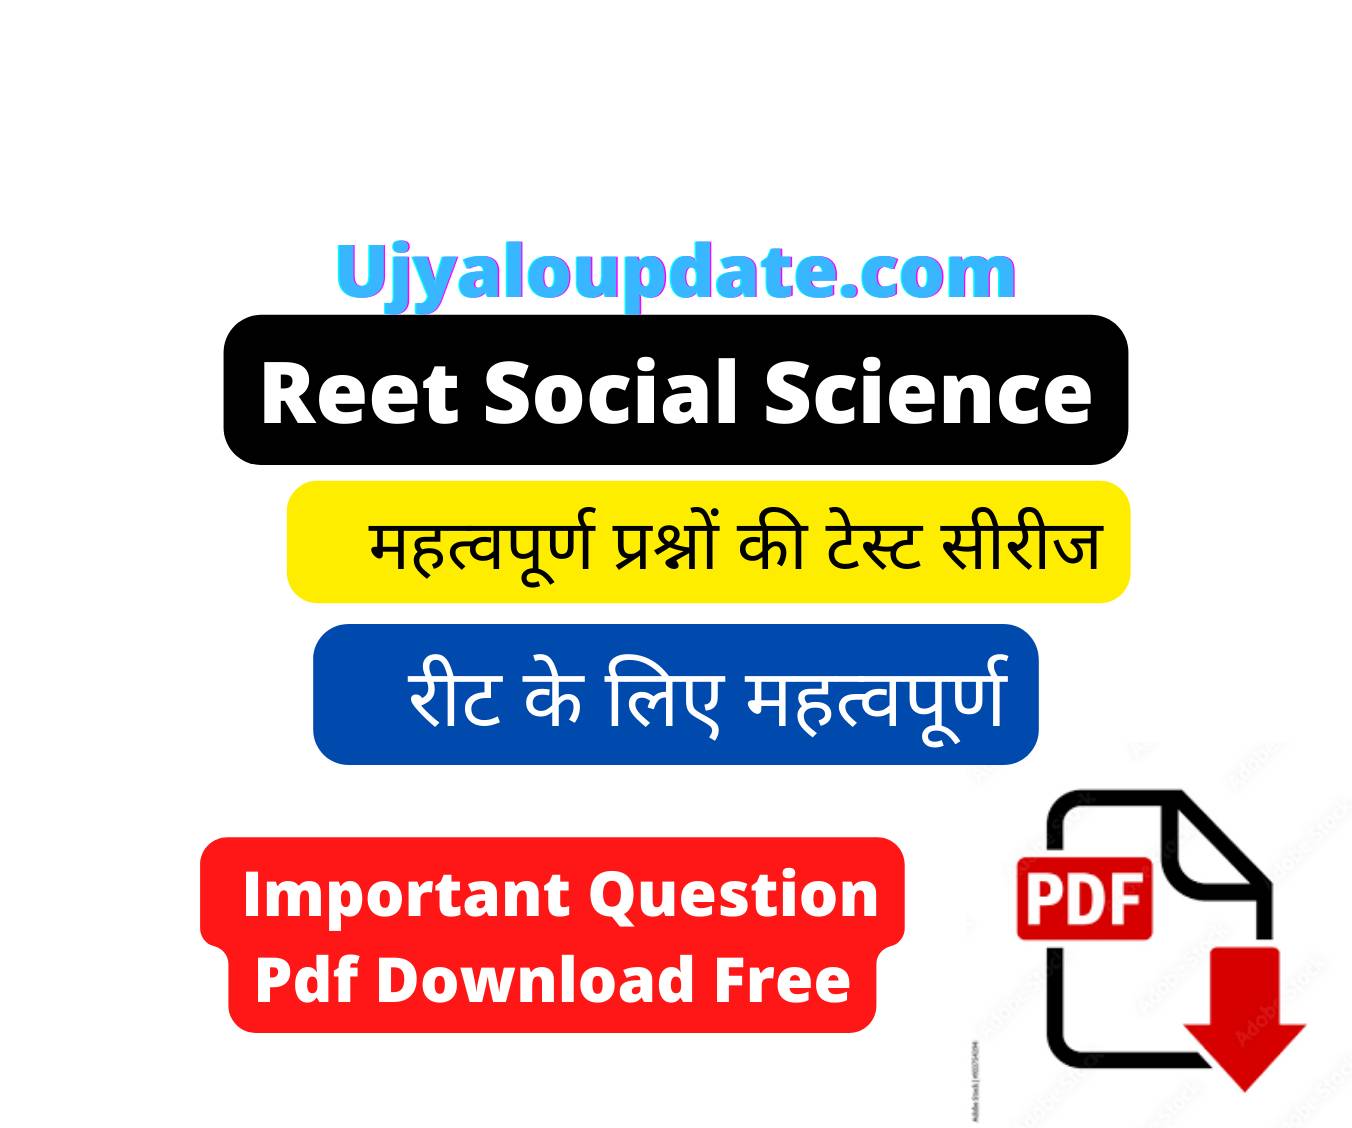 Reet Social Science Test Series